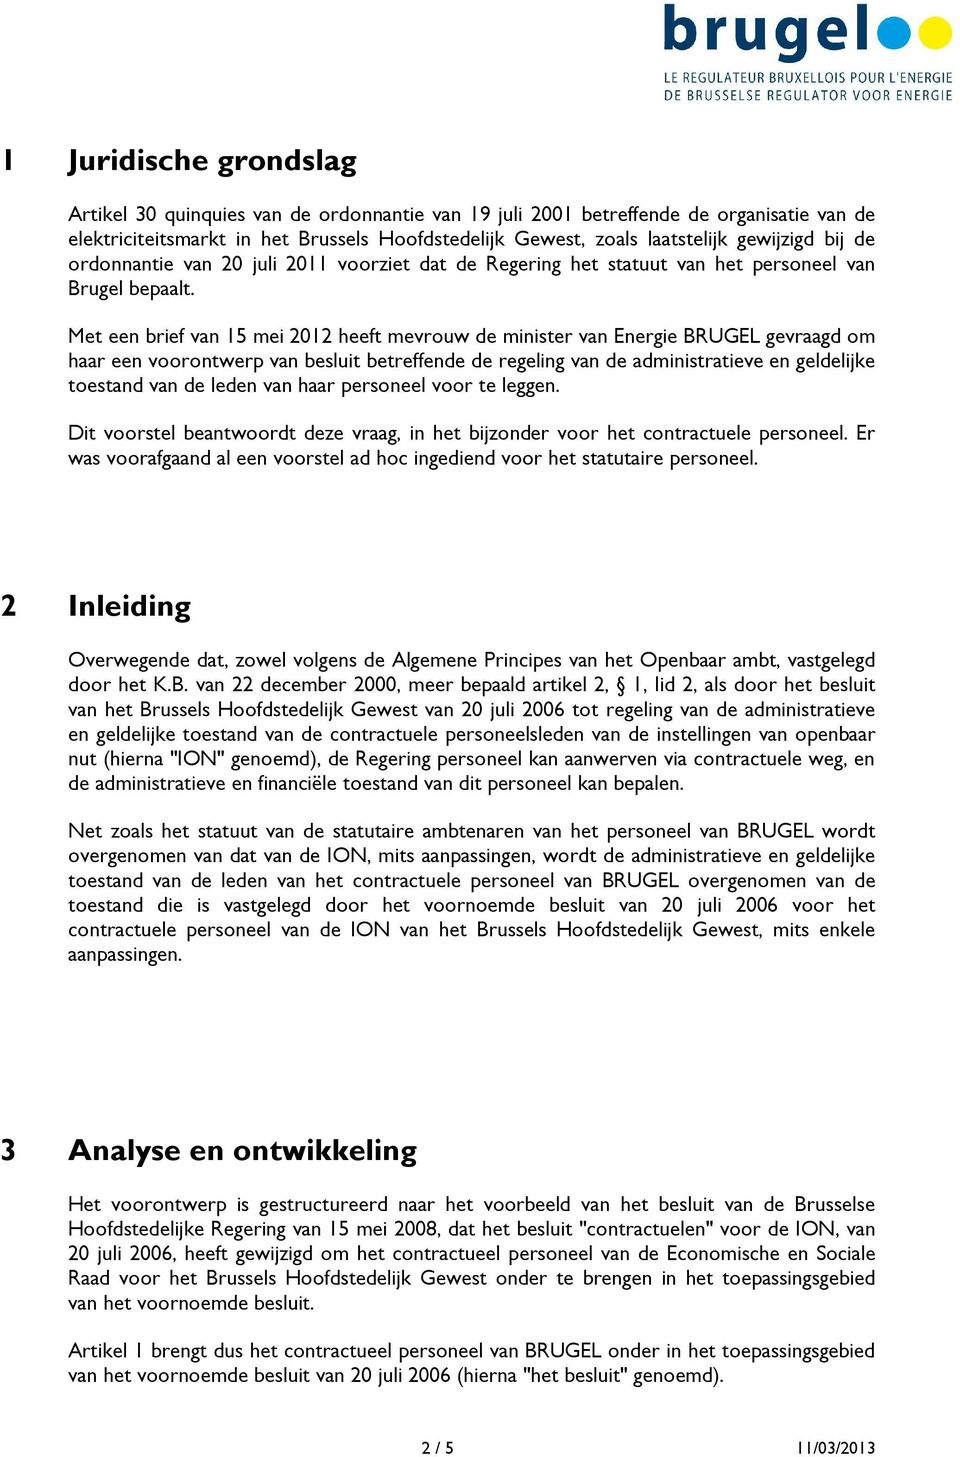 Met een brief van 15 mei 2012 heeft mevrouw de minister van Energie BRUGEL gevraagd om haar een voorontwerp van besluit betreffende de regeling van de administratieve en geldelijke toestand van de